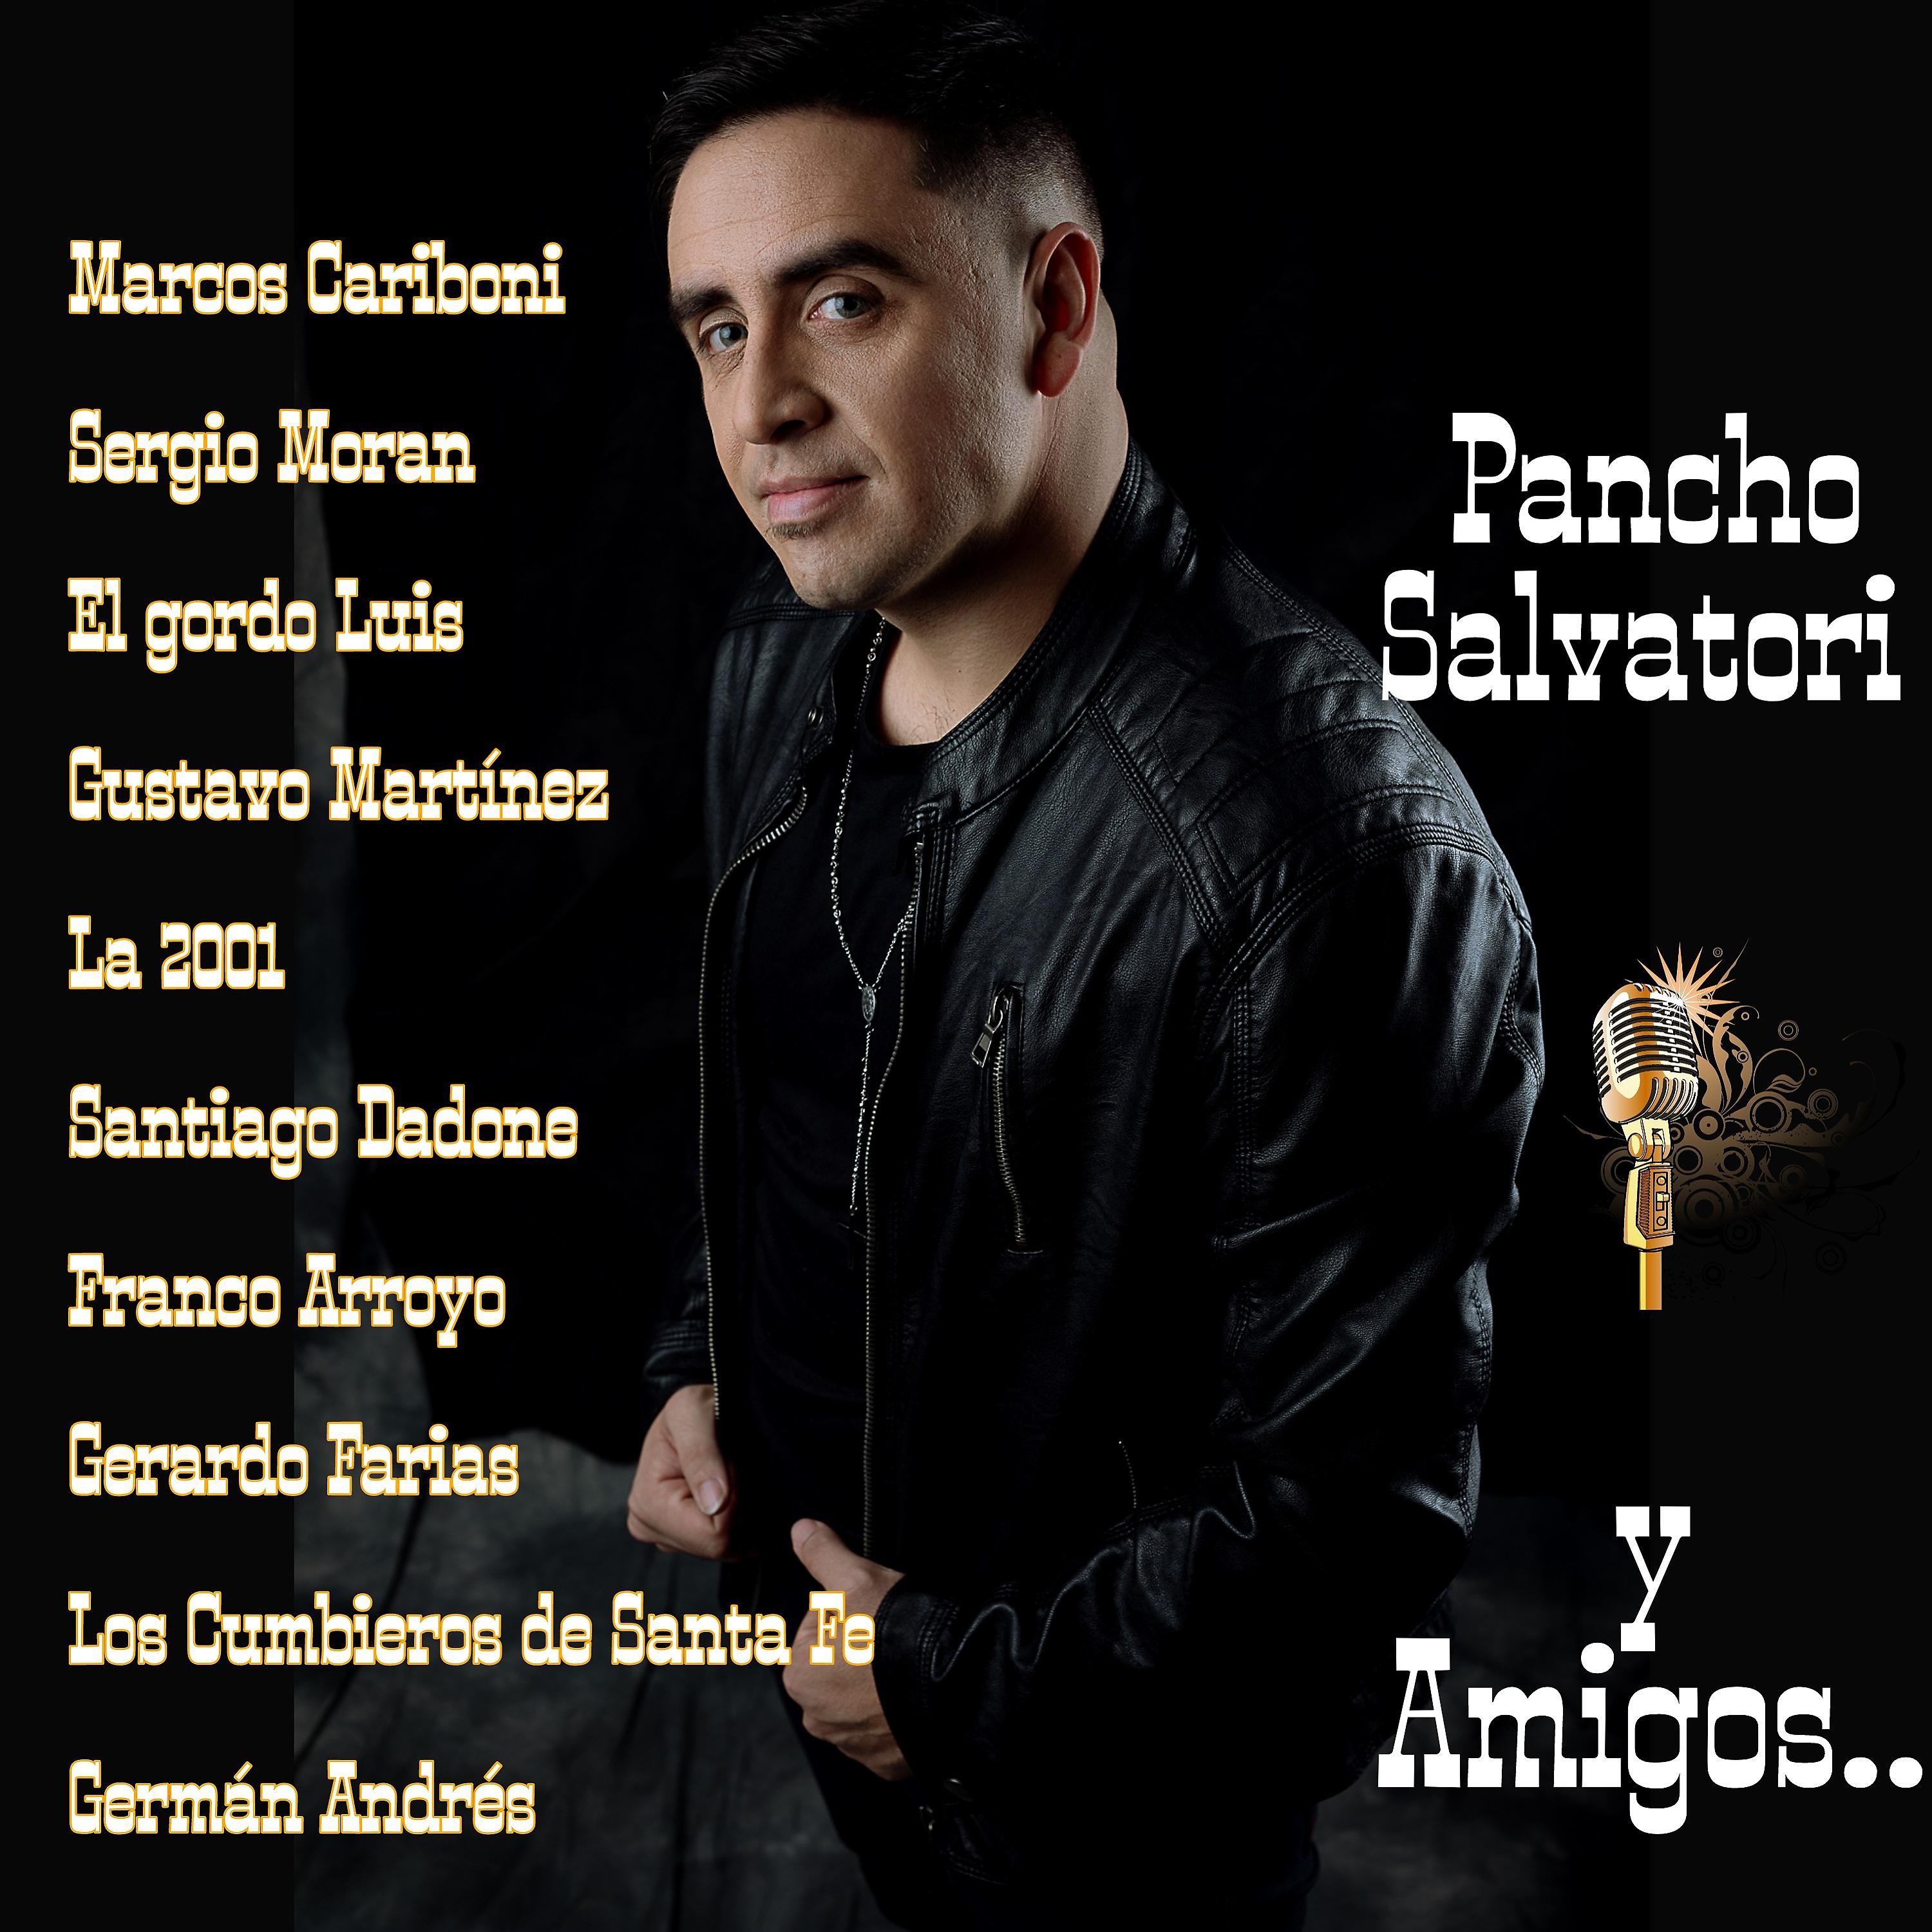 Постер альбома Pancho Salvatori y Amigos